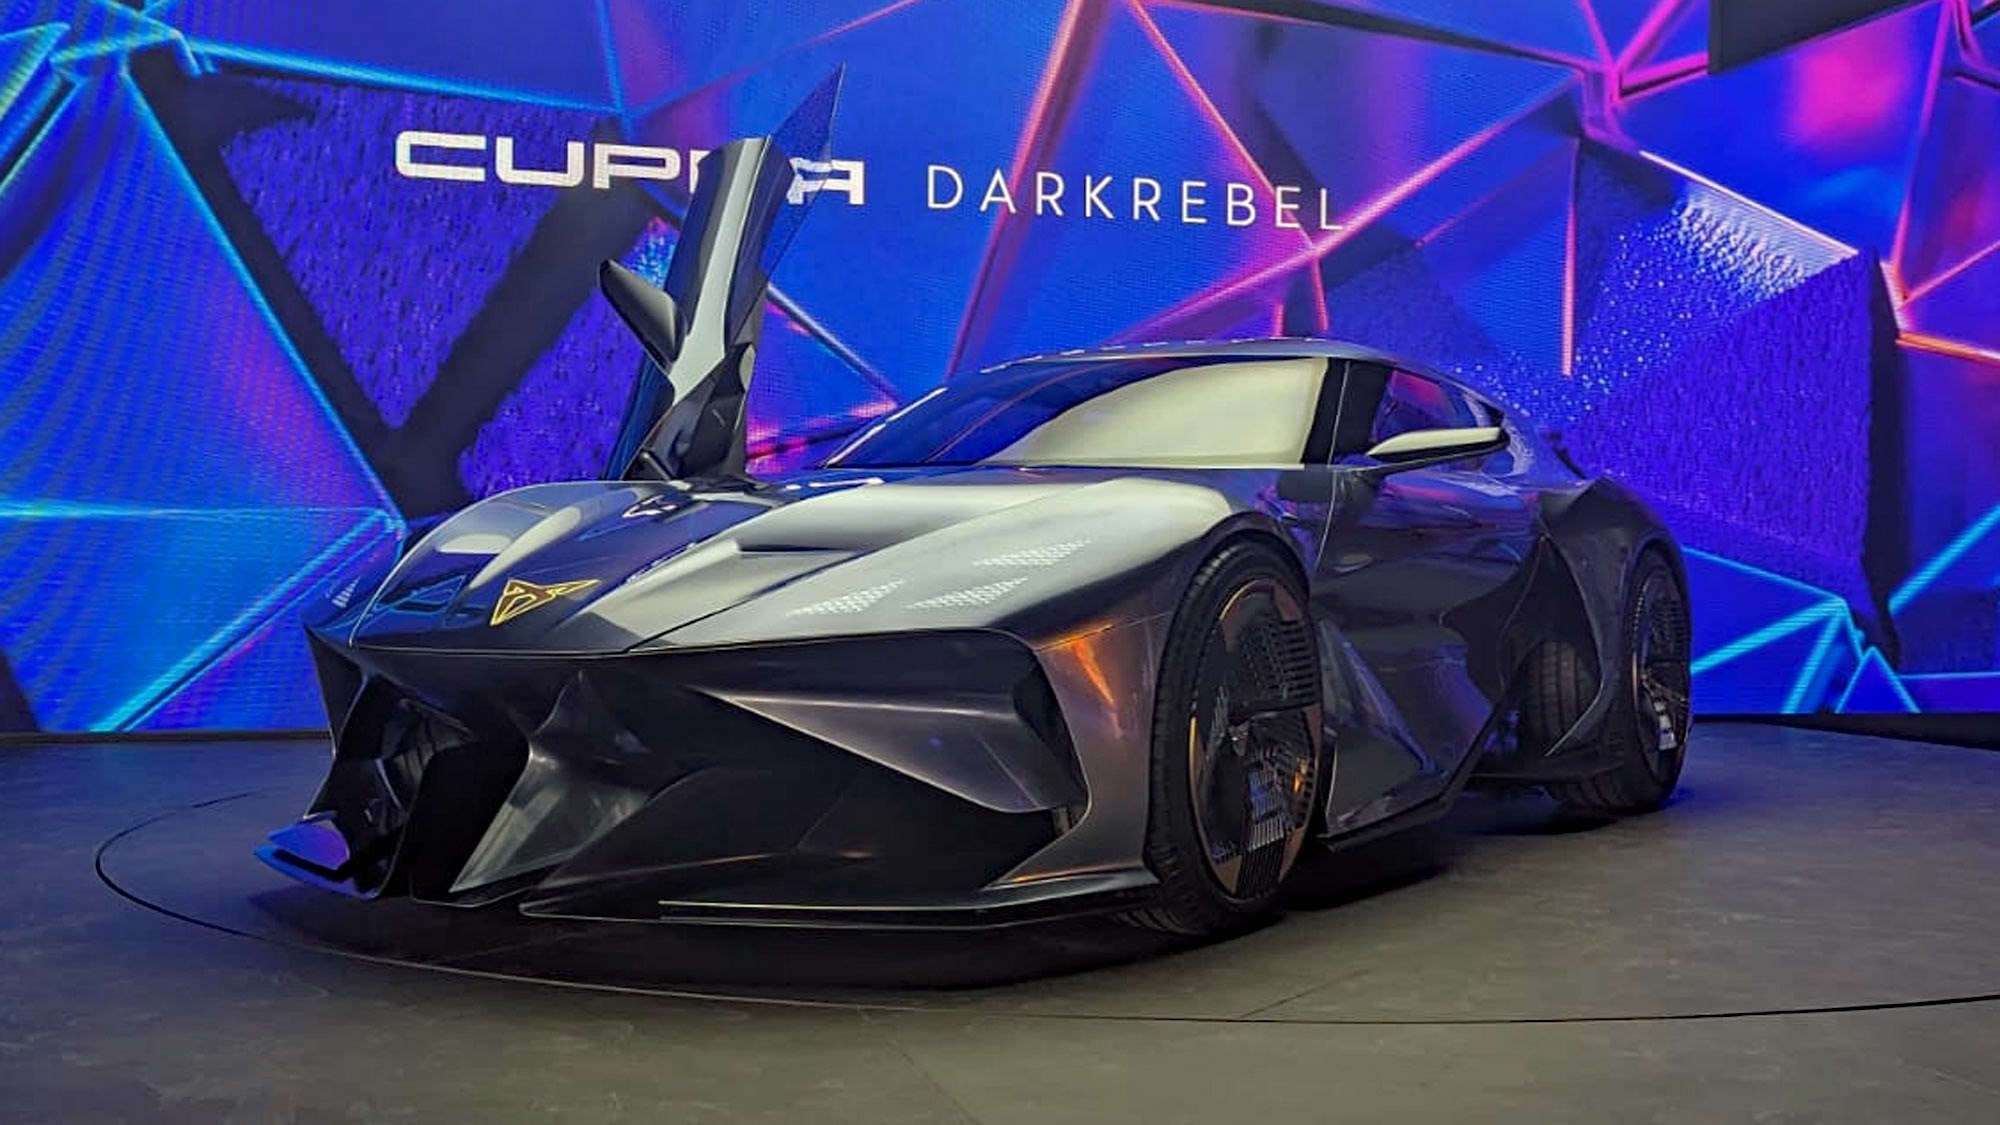 Cupra's Batman-styled DarkRebel EV could reach America